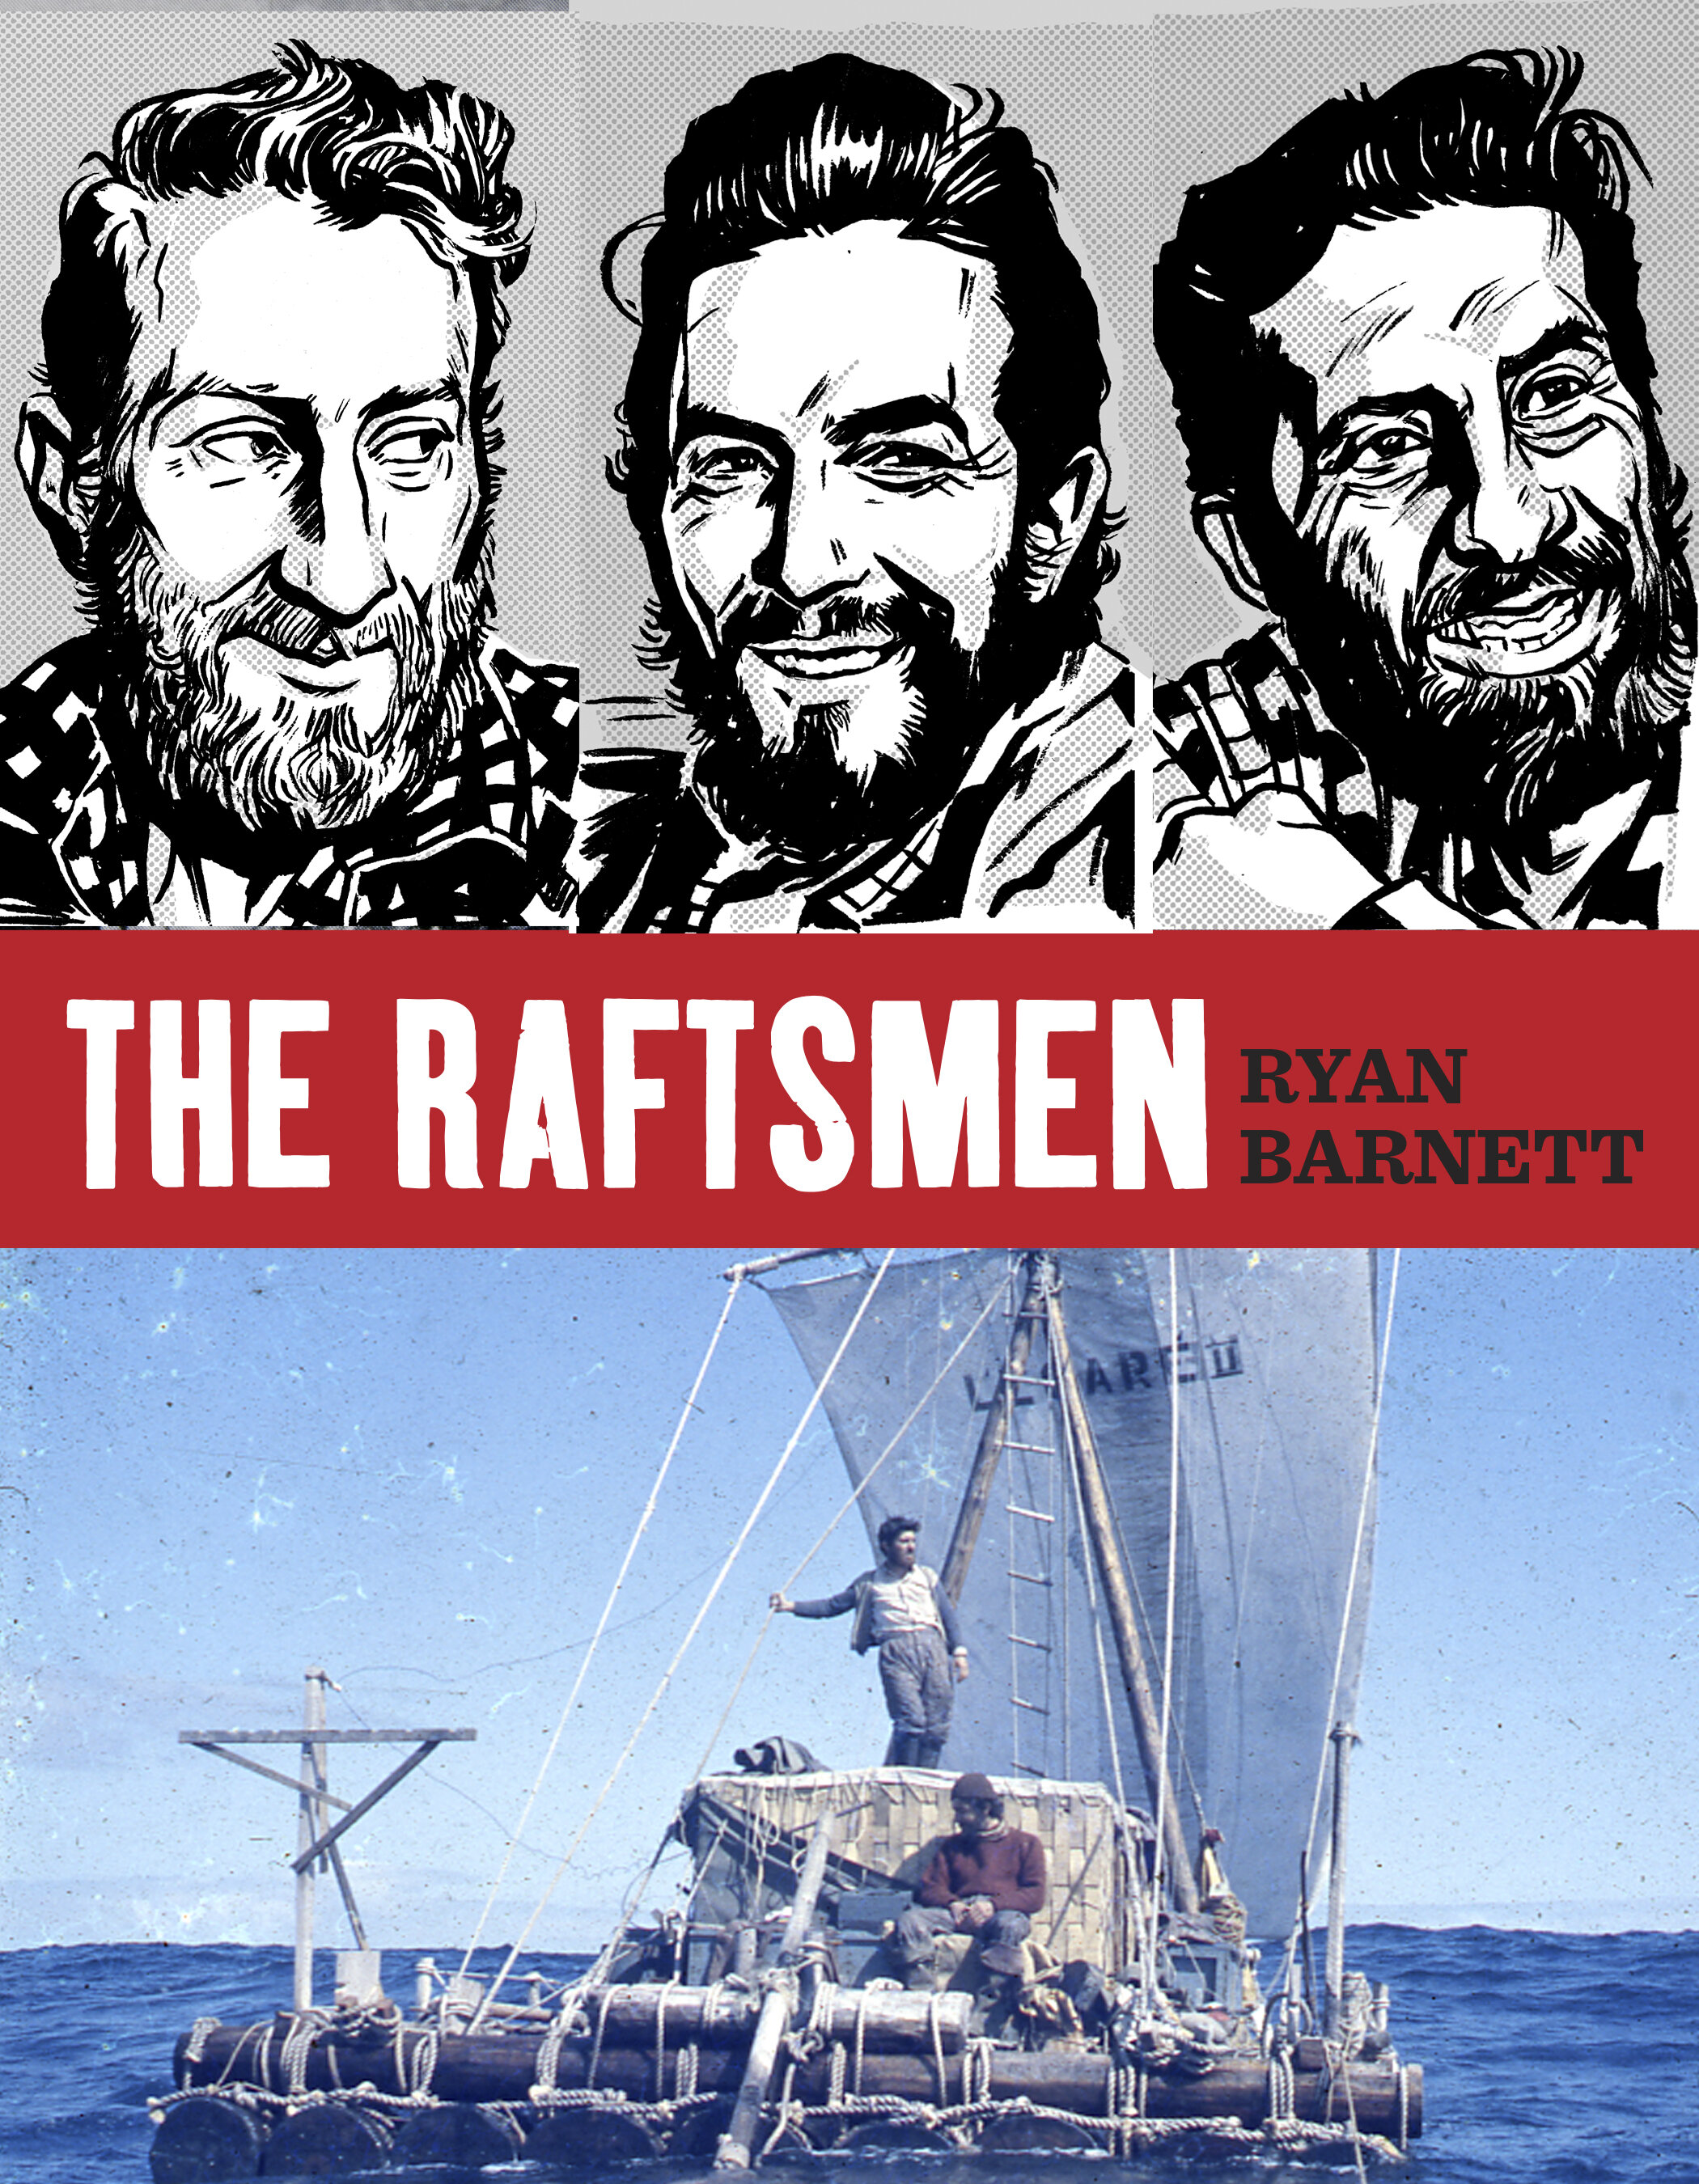 The Raftsmen, Firefly Books 2018, Cover Design